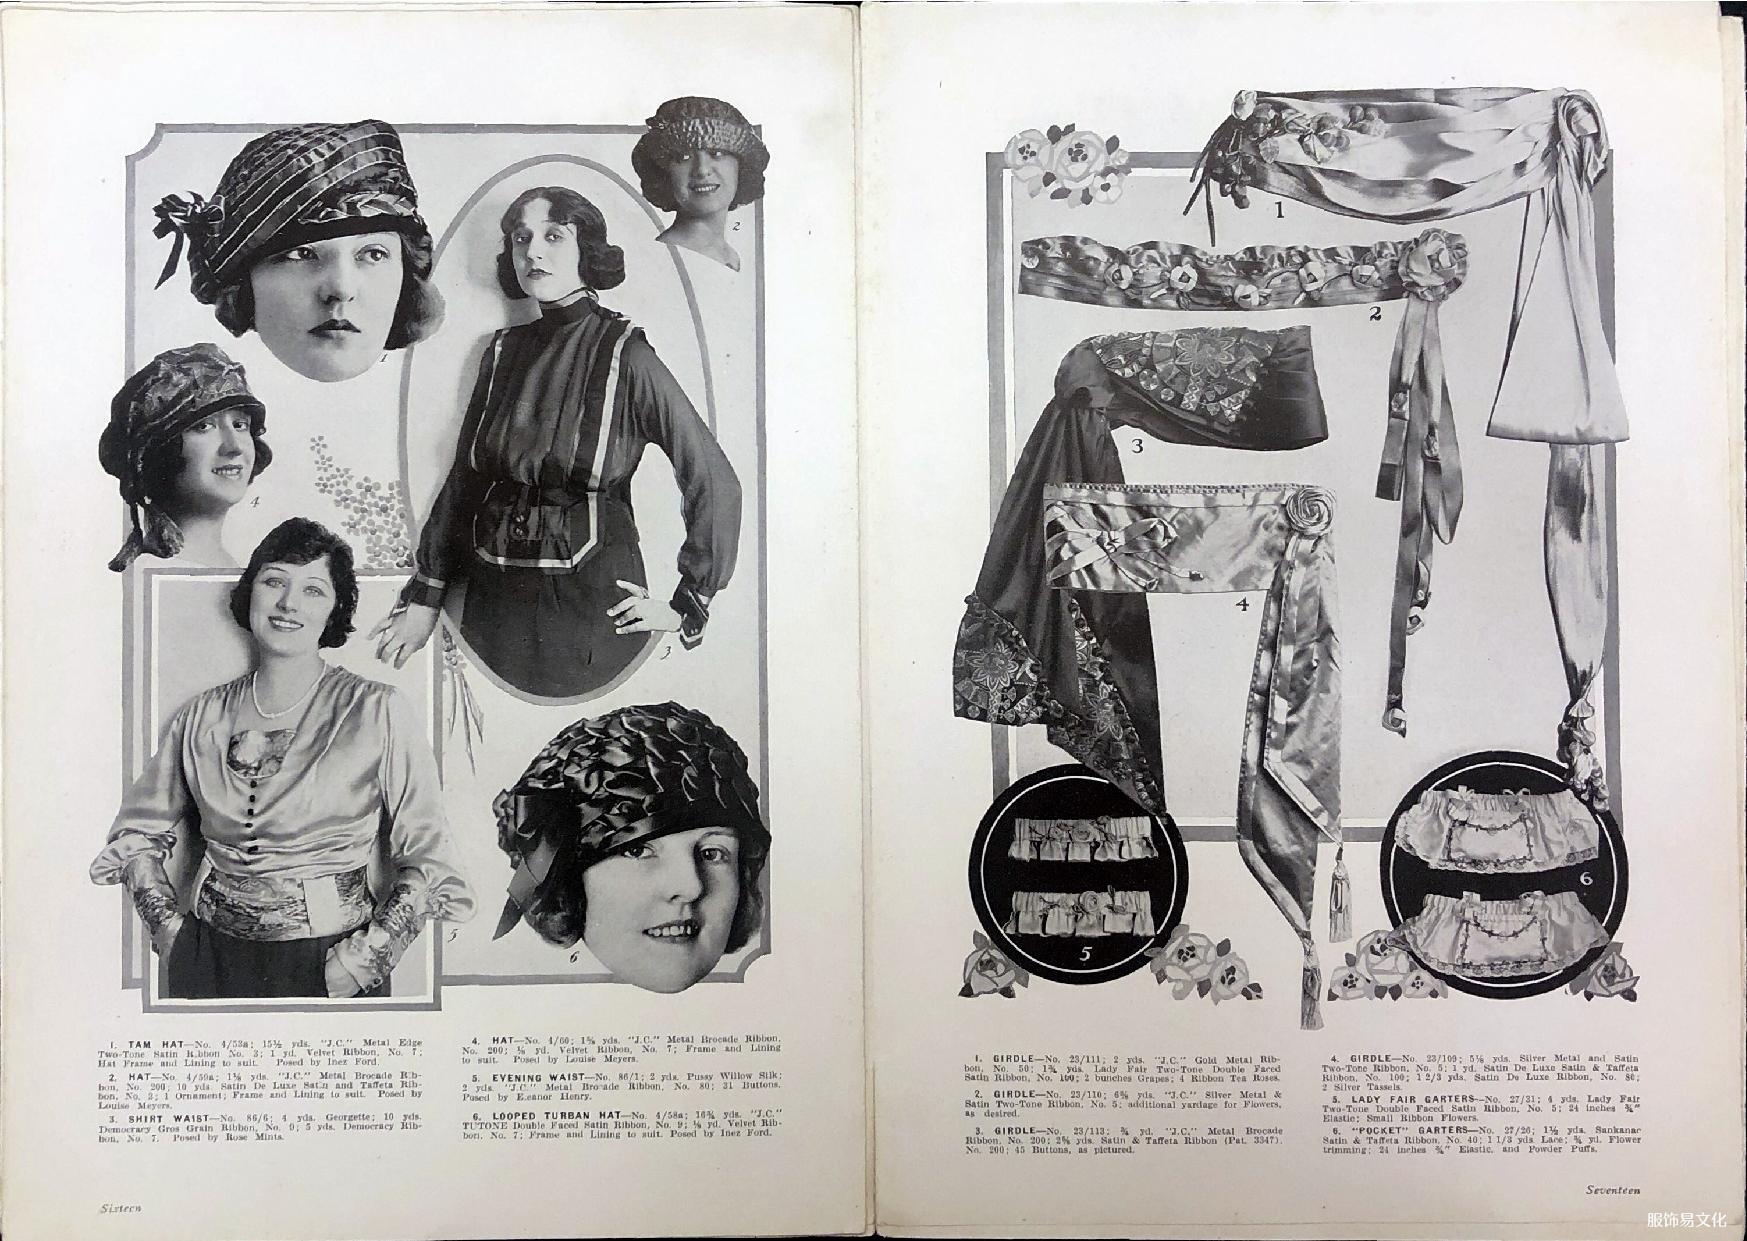 内布拉斯加州出版的1920 年秋季丝带流行趋势